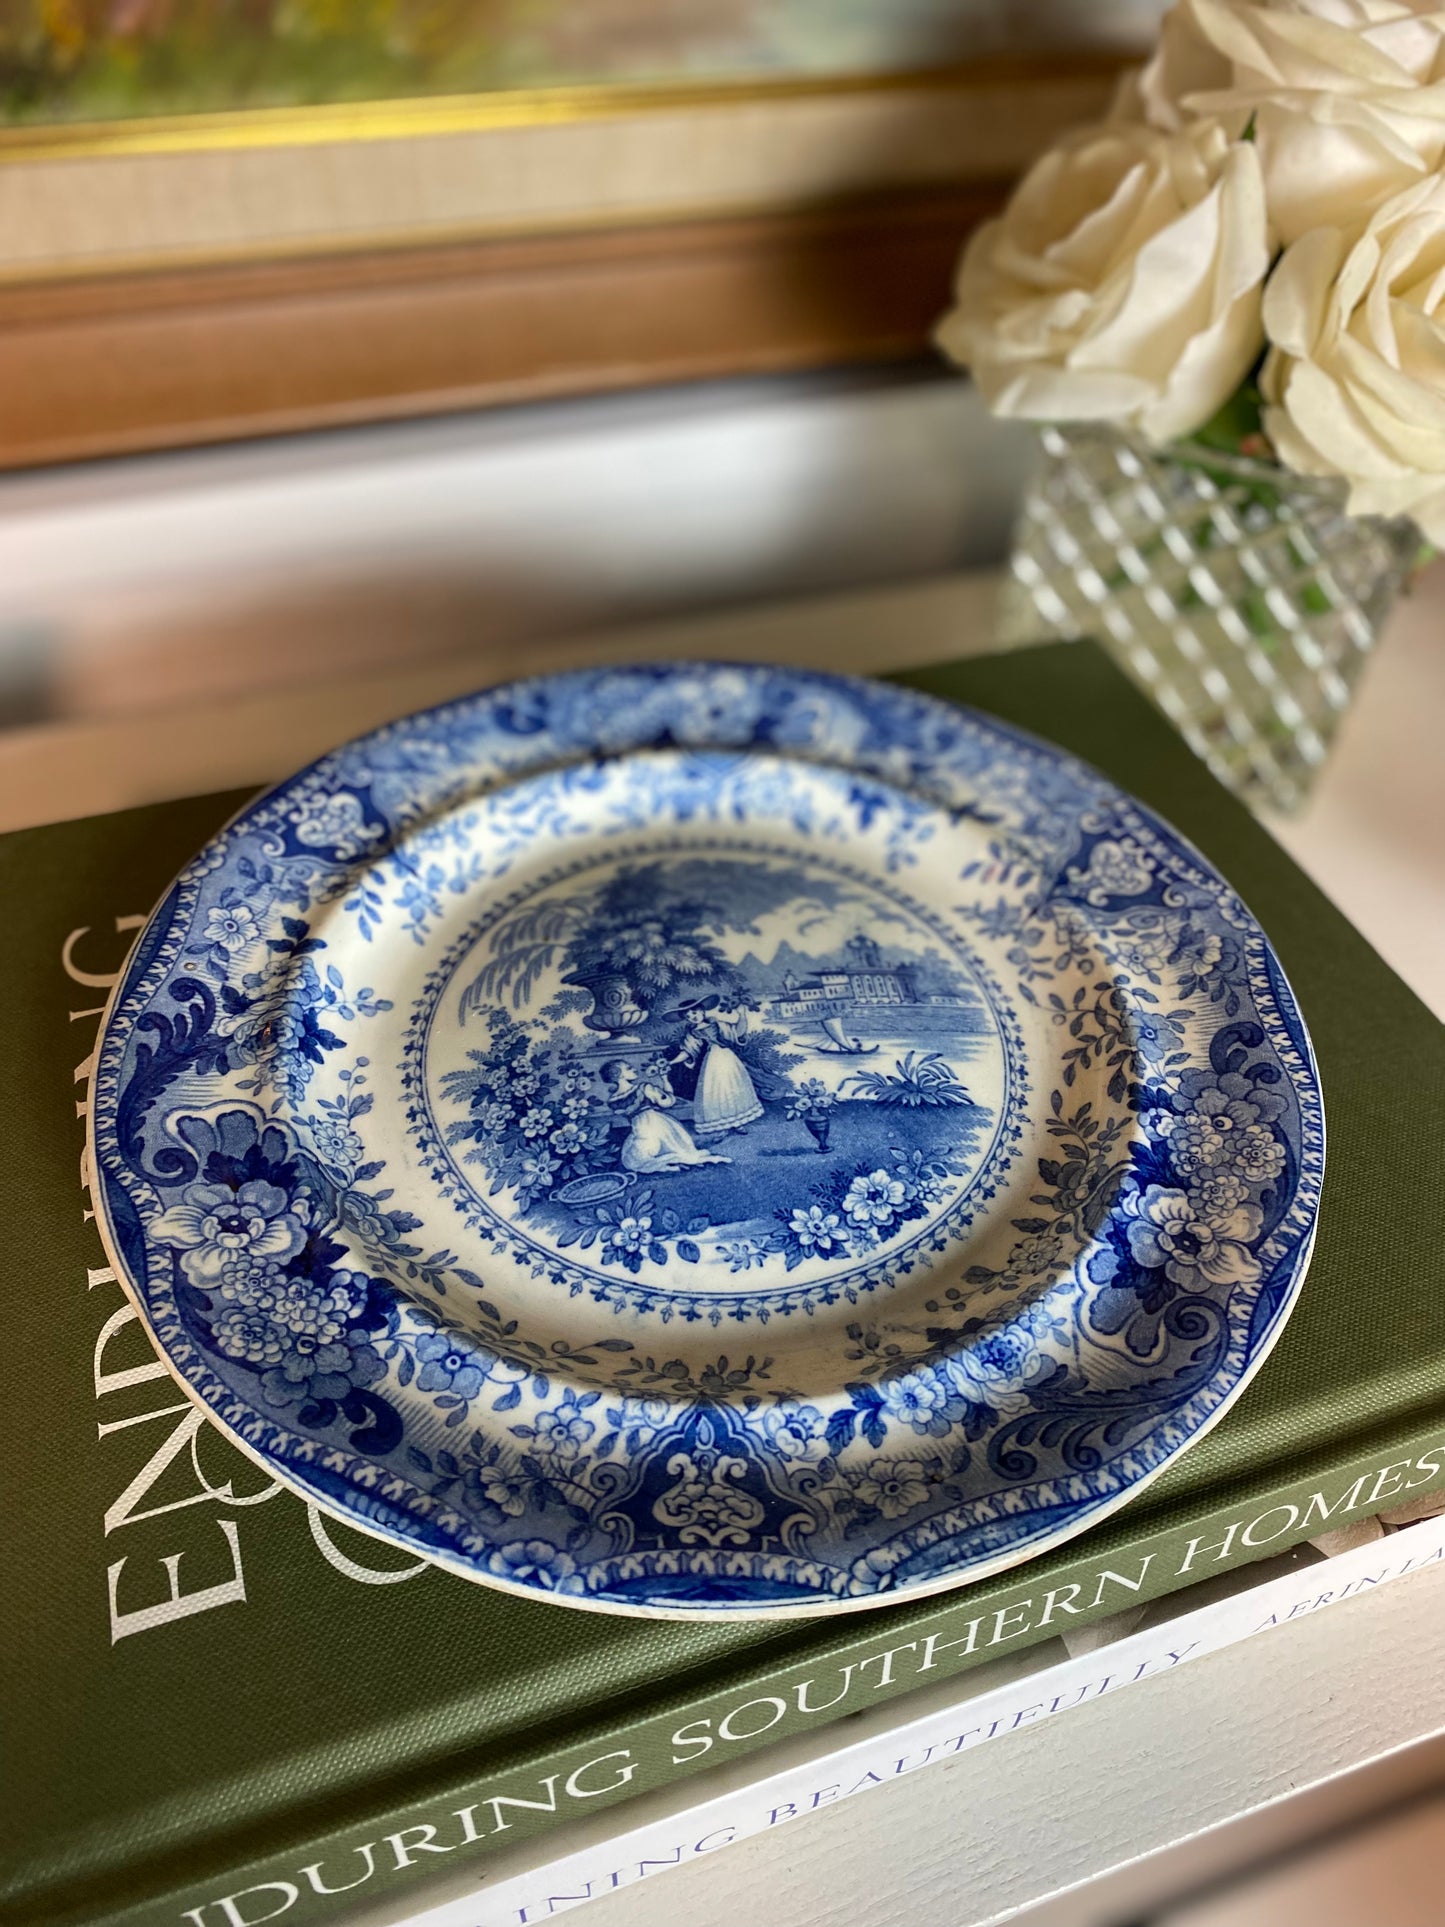 Antique, 19c. English Blue & White Plate, 9"D - Excellent!